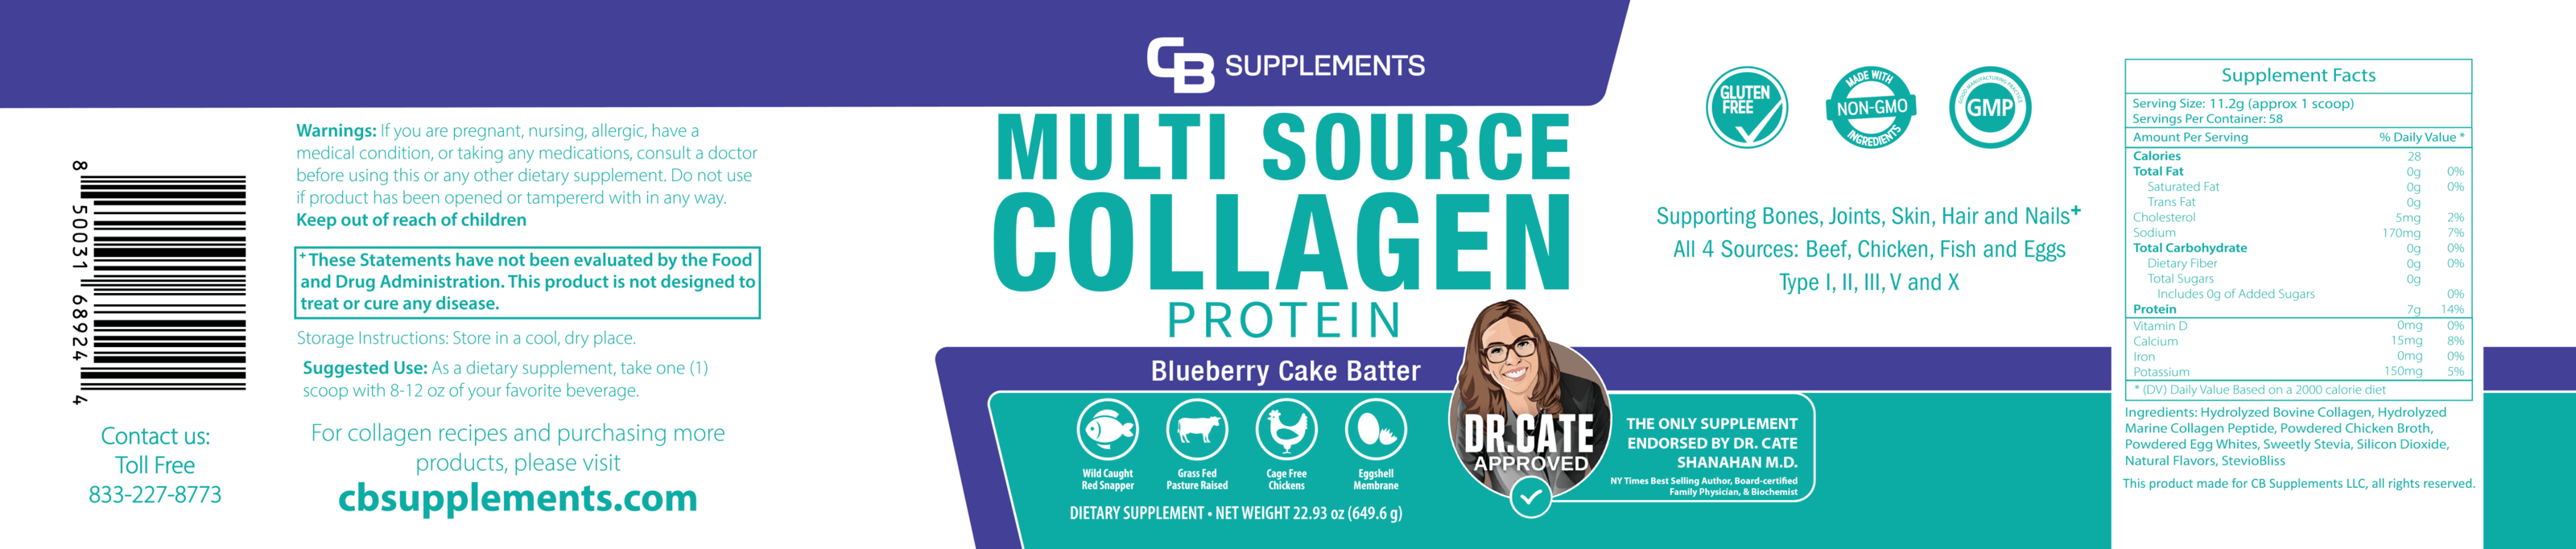 Blueberry Cake Batter Multi Collagen Protein Powder Label